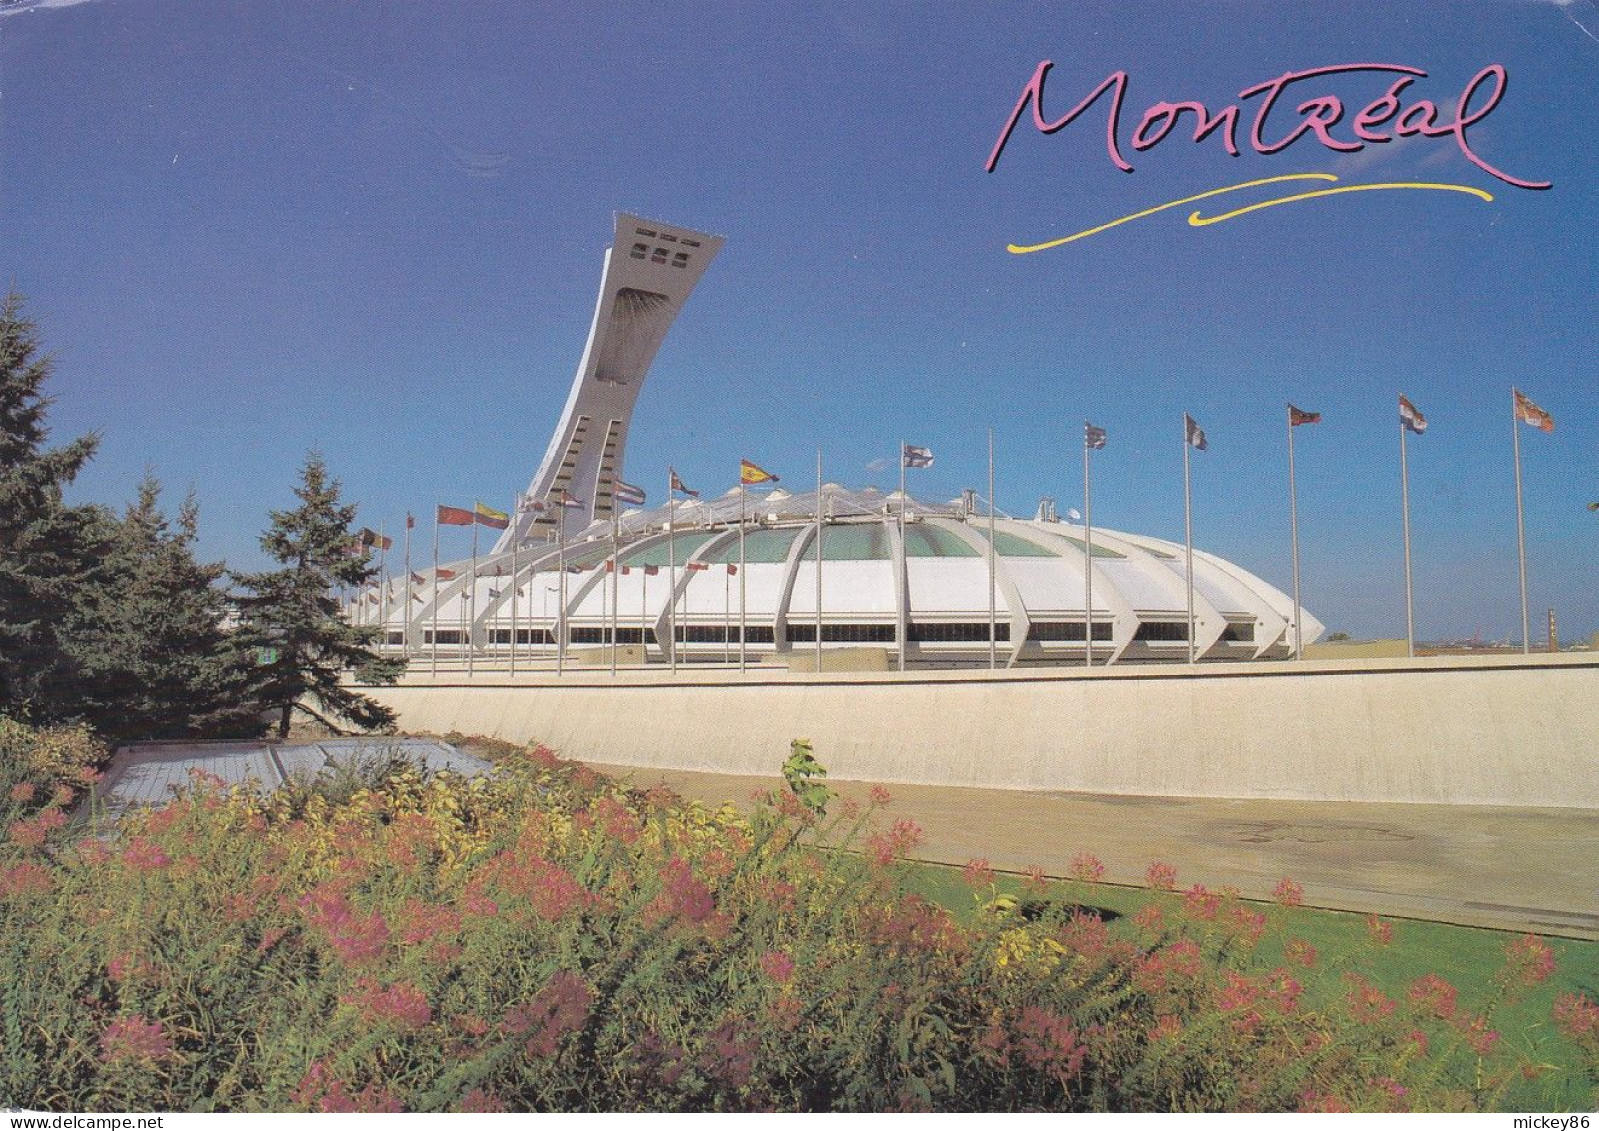 Canada-- MONTREAL --1998 --Le Stade Olympique ,foyer Des Expos De Montréal ...timbre...cachet - Stades